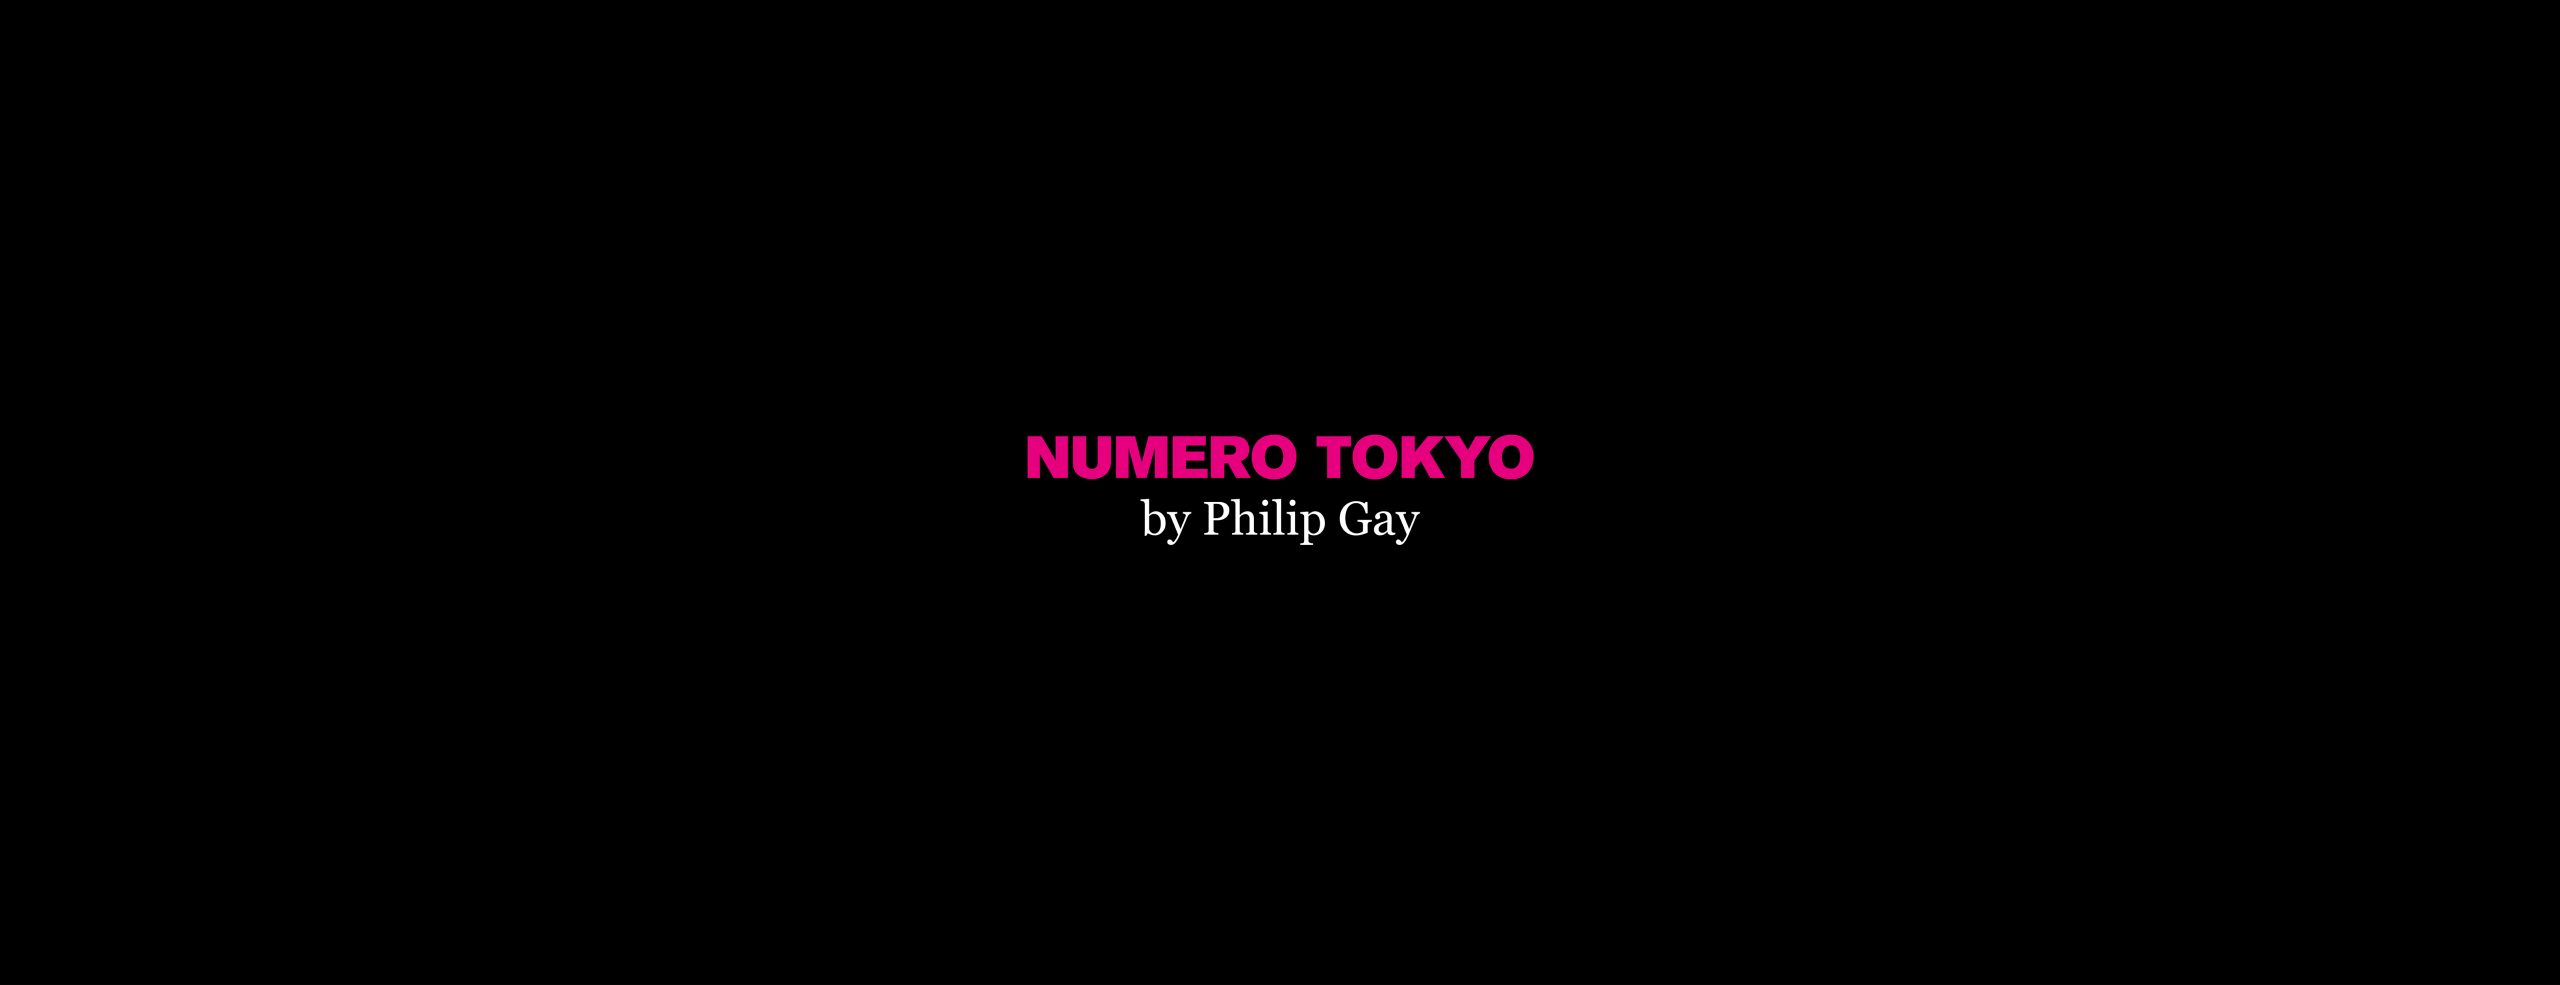 Numero Tokyo by Philip Gay